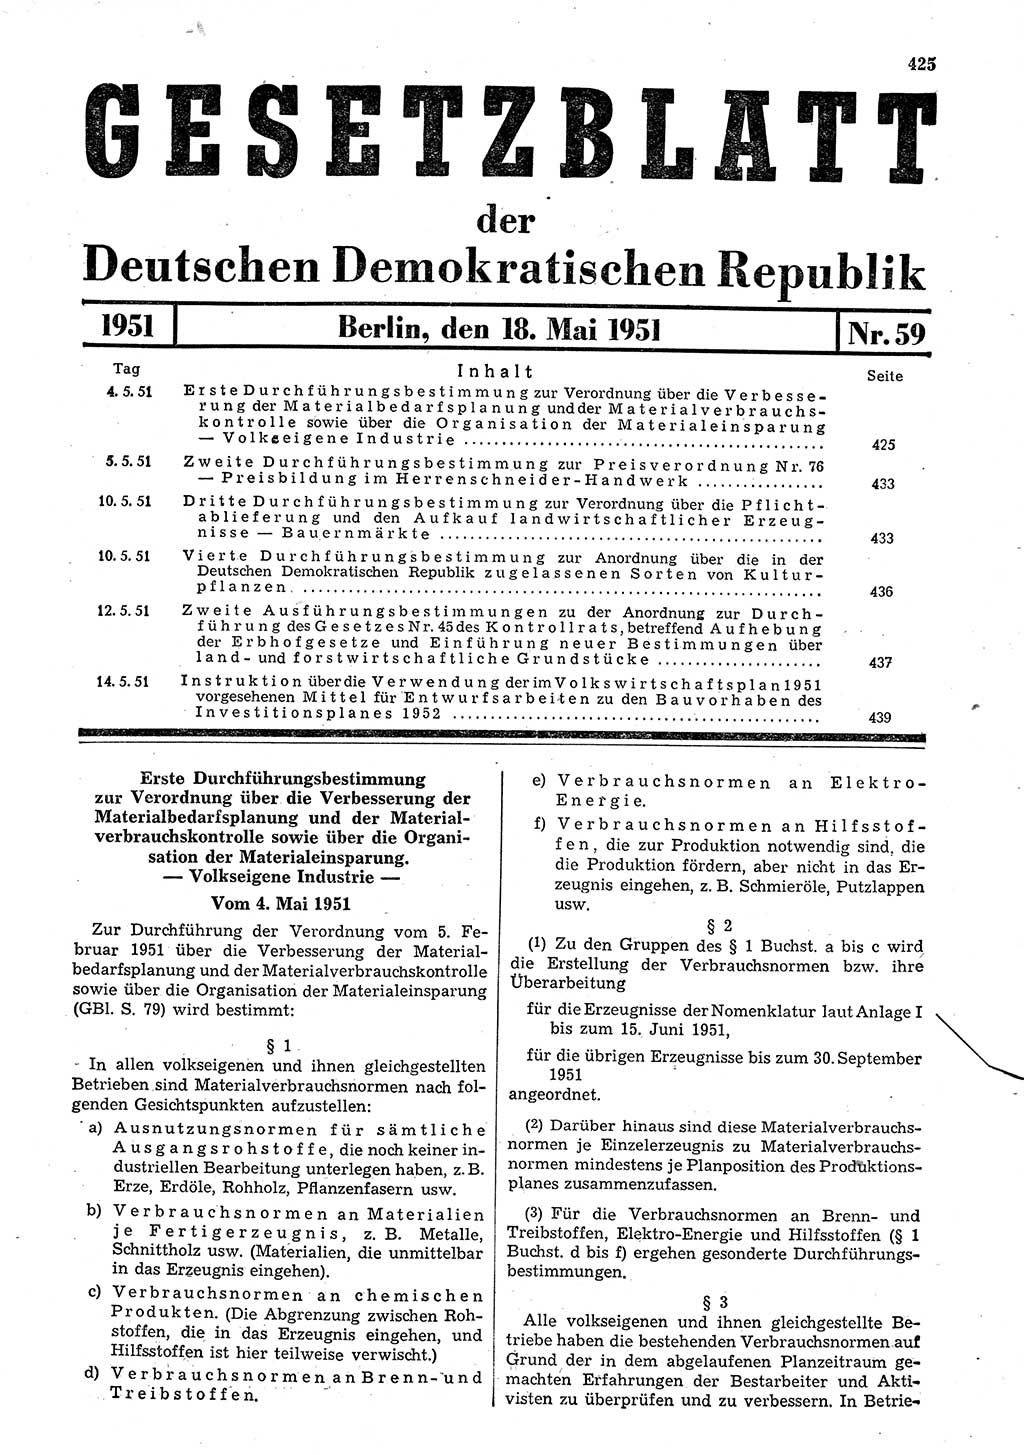 Gesetzblatt (GBl.) der Deutschen Demokratischen Republik (DDR) 1951, Seite 425 (GBl. DDR 1951, S. 425)